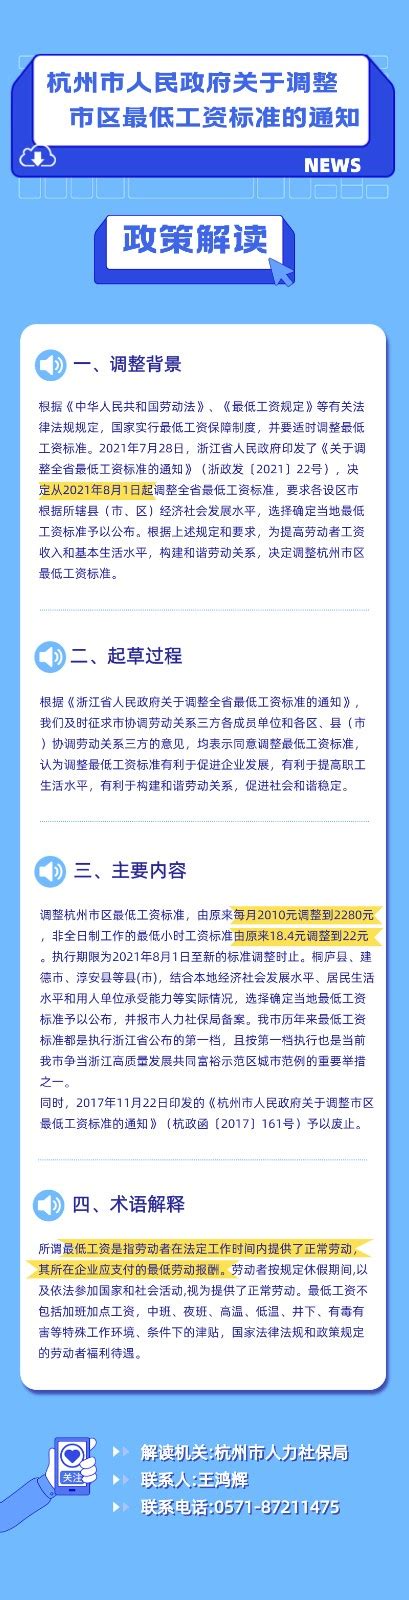 《杭州市人民政府关于调整市区最低工资标准的通知》图文政策解读